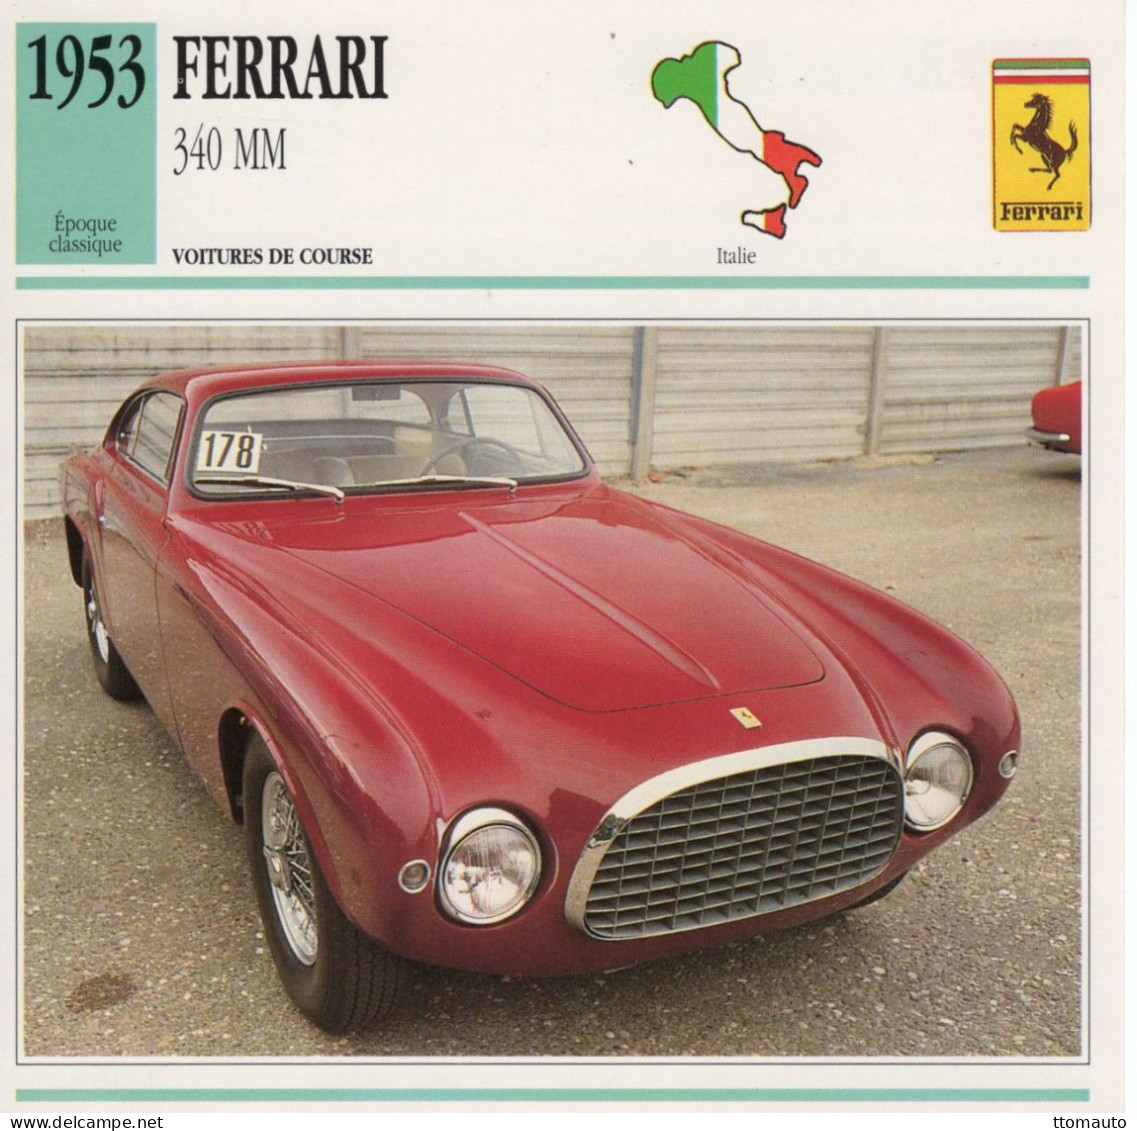 Ferrari 340 MM -  1953 - Voiture De Course -  Fiche Technique Automobile (I) - Autos